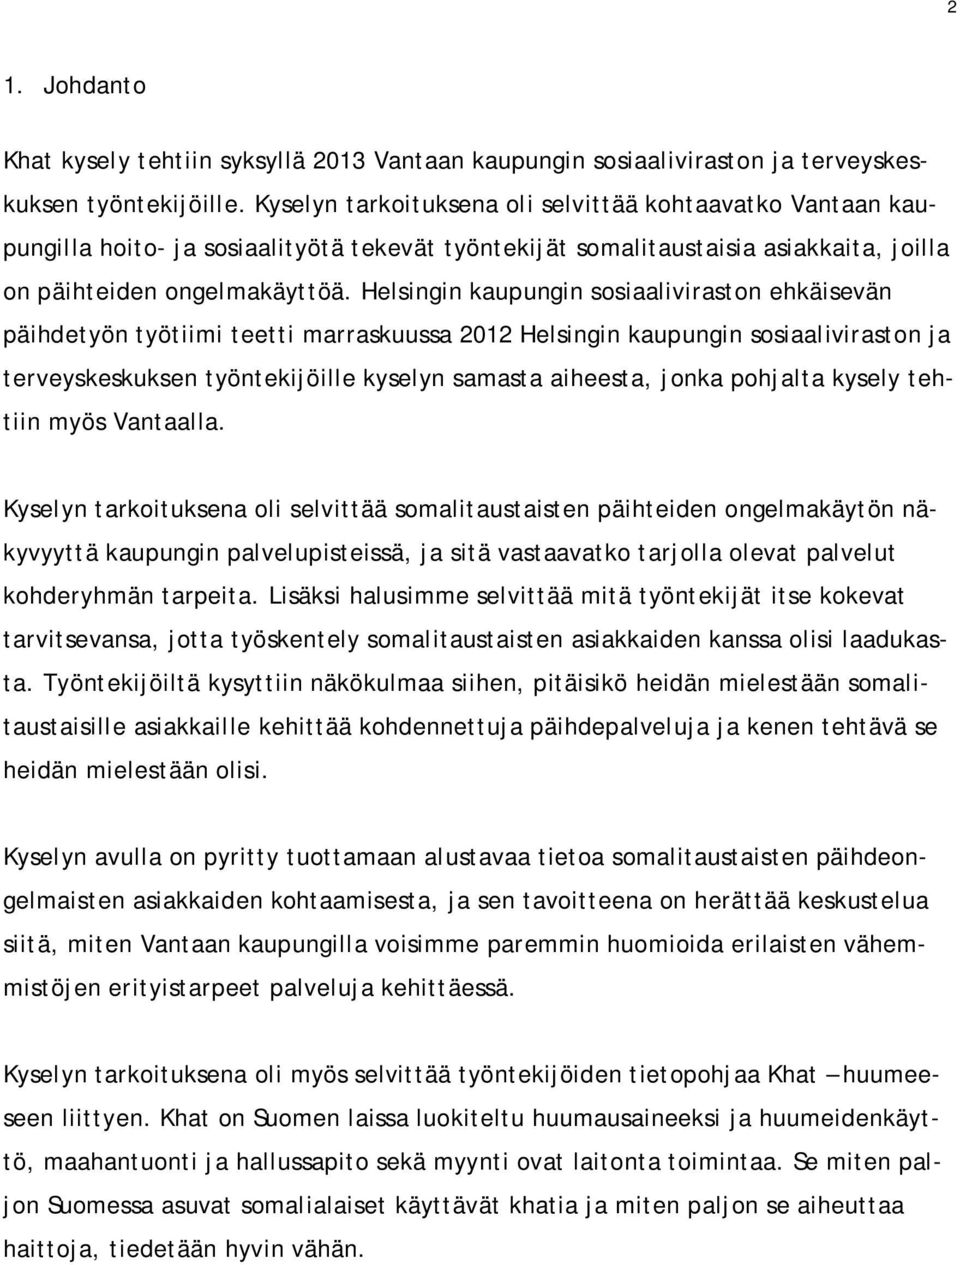 Helsingin kaupungin sosiaaliviraston ehkäisevän päihdetyön työtiimi teetti marraskuussa 2012 Helsingin kaupungin sosiaaliviraston ja terveyskeskuksen työntekijöille kyselyn samasta aiheesta, jonka